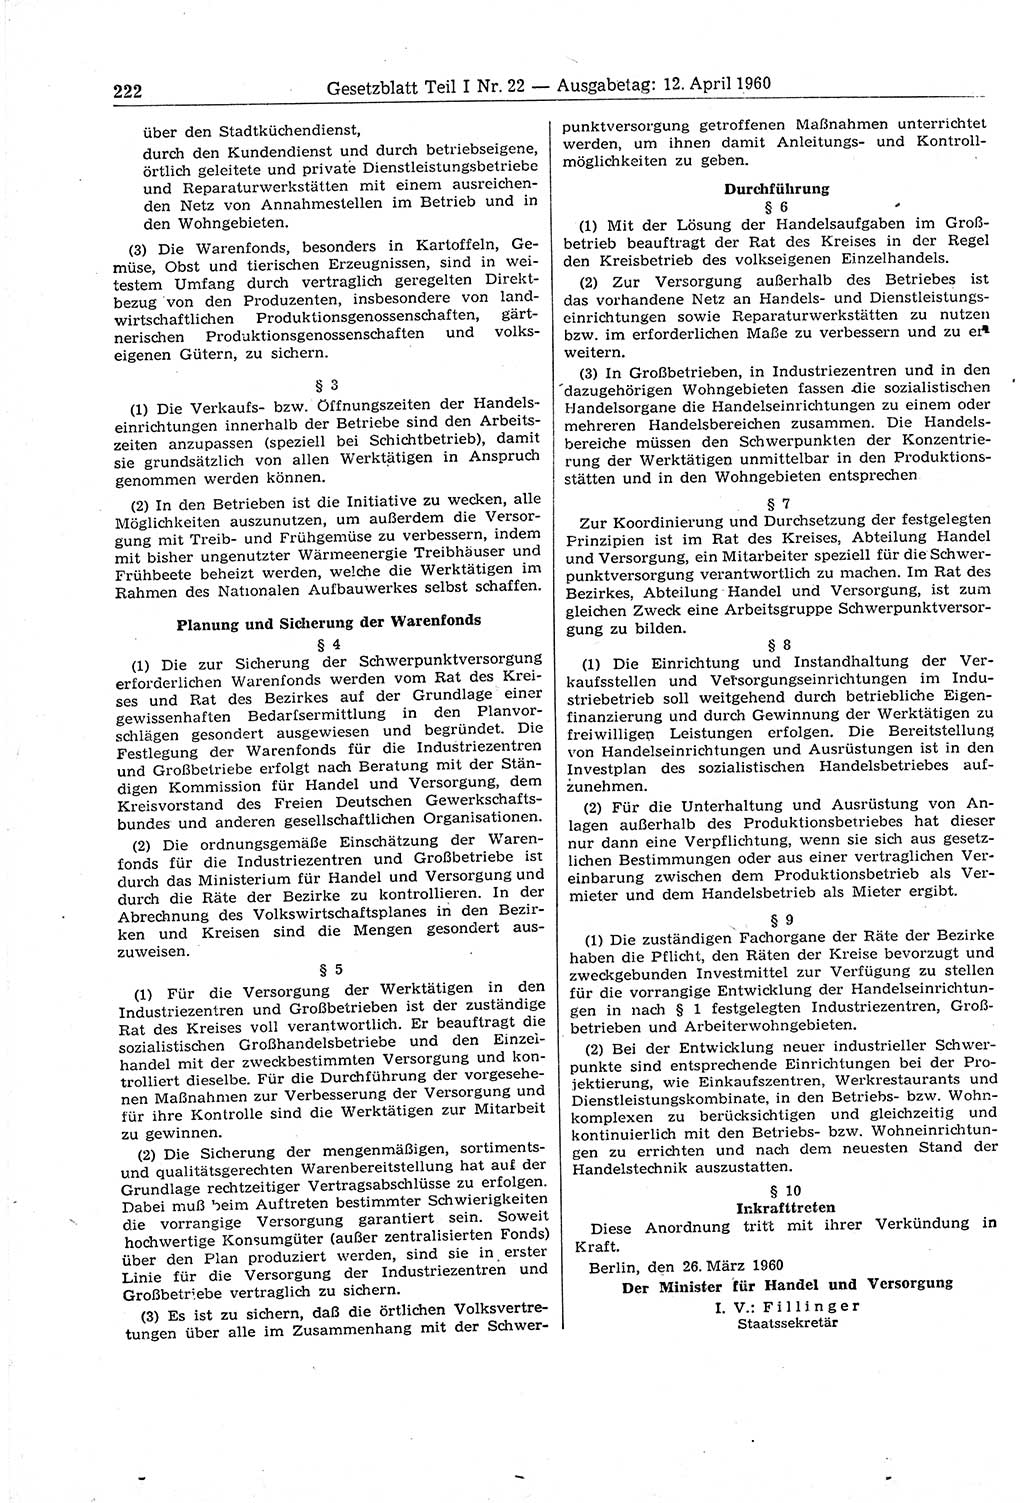 Gesetzblatt (GBl.) der Deutschen Demokratischen Republik (DDR) Teil Ⅰ 1960, Seite 222 (GBl. DDR Ⅰ 1960, S. 222)